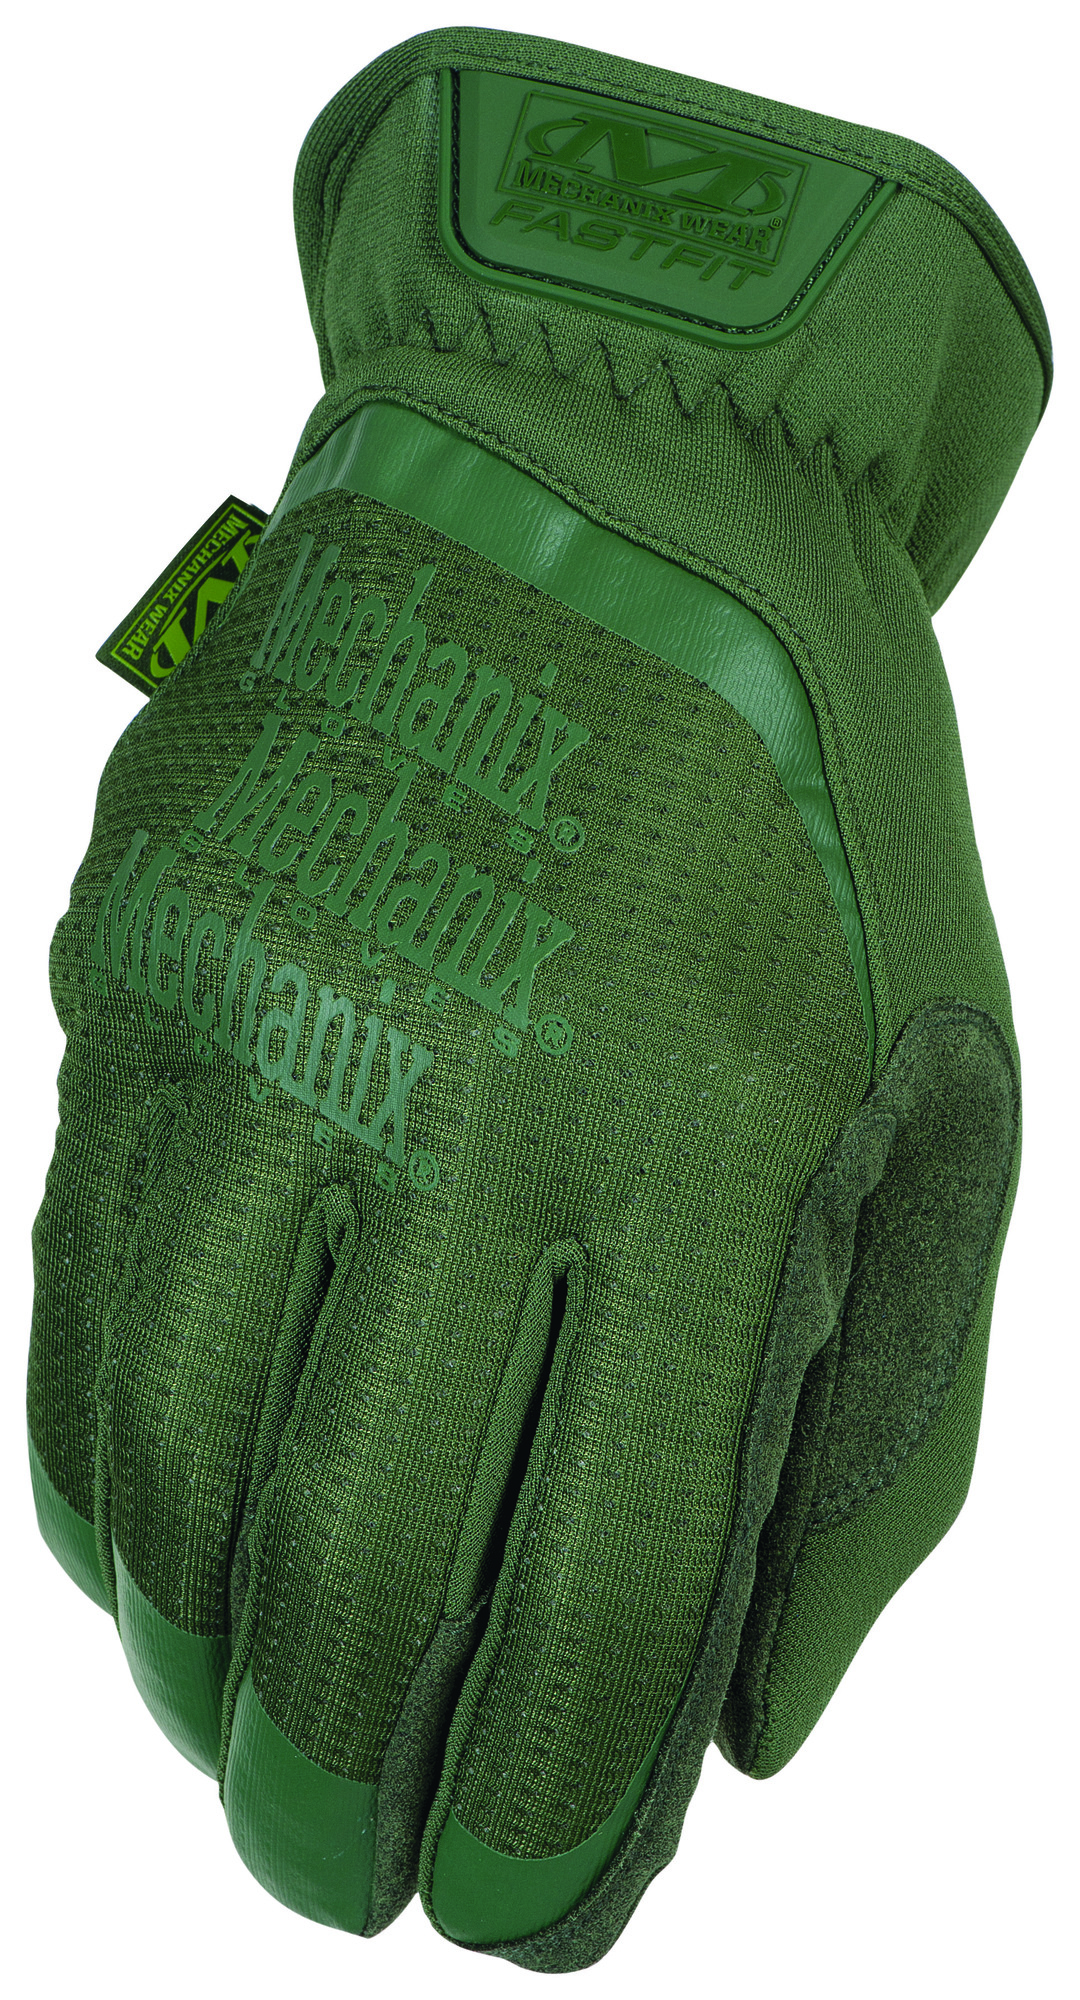 MECHANIX Zimné rukavice FastFit - olivovo zelená XL/11